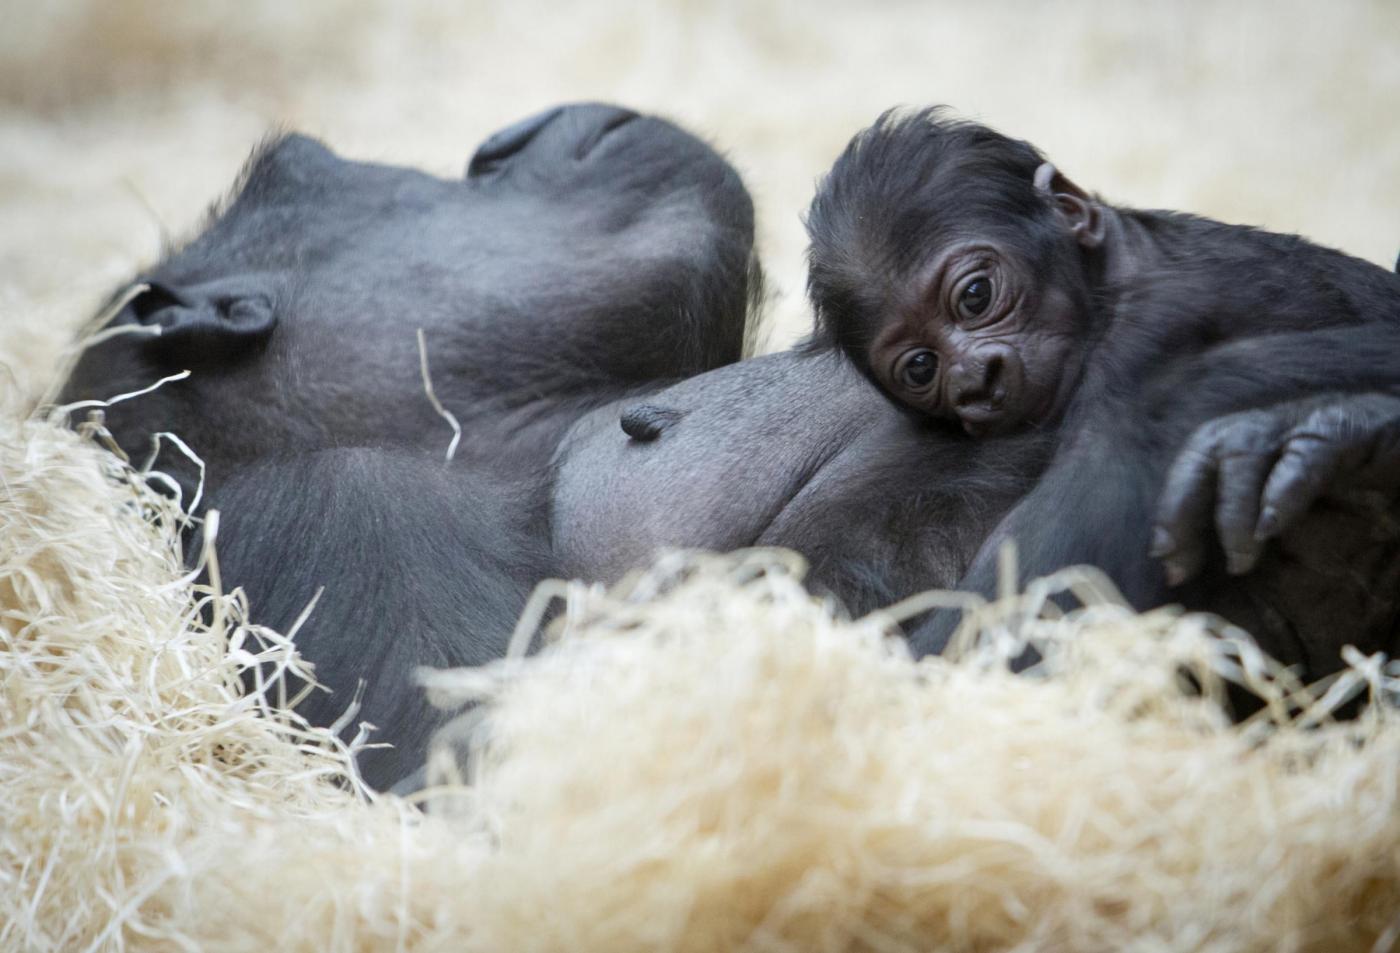 Gorilla nato nello zoo di Praga il 22 dicembre è già una attrazione07